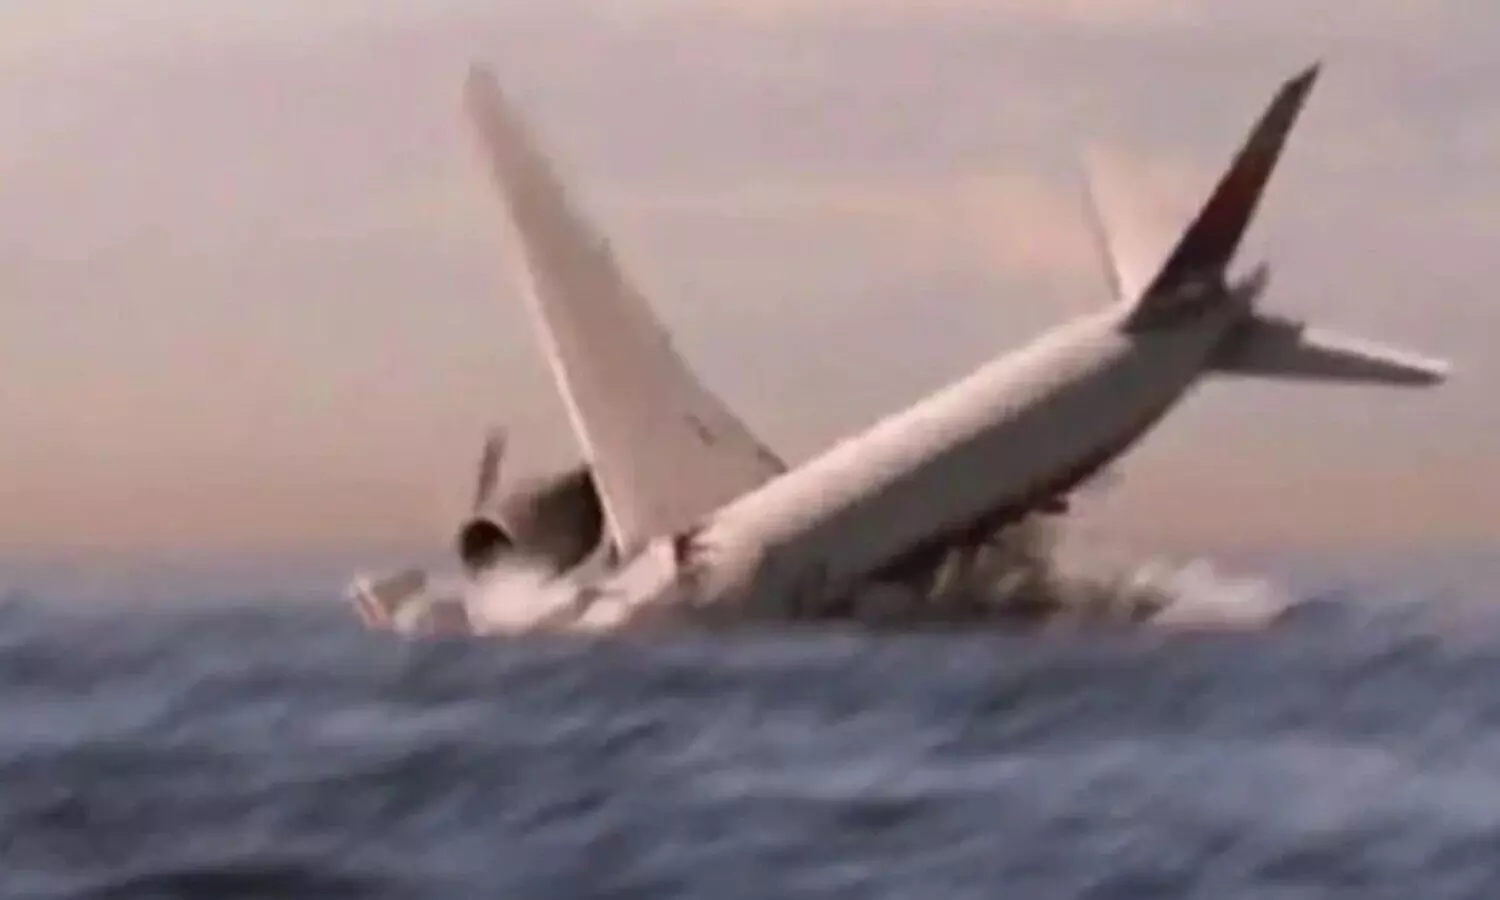 MH370 Plane Crash: लापता मलेशियाई विमान MH370 के रहस्य से 8 साल बाद भी नहीं उठा पर्दा, हवा में तैर रहे हैं कई Conspiracy Theories